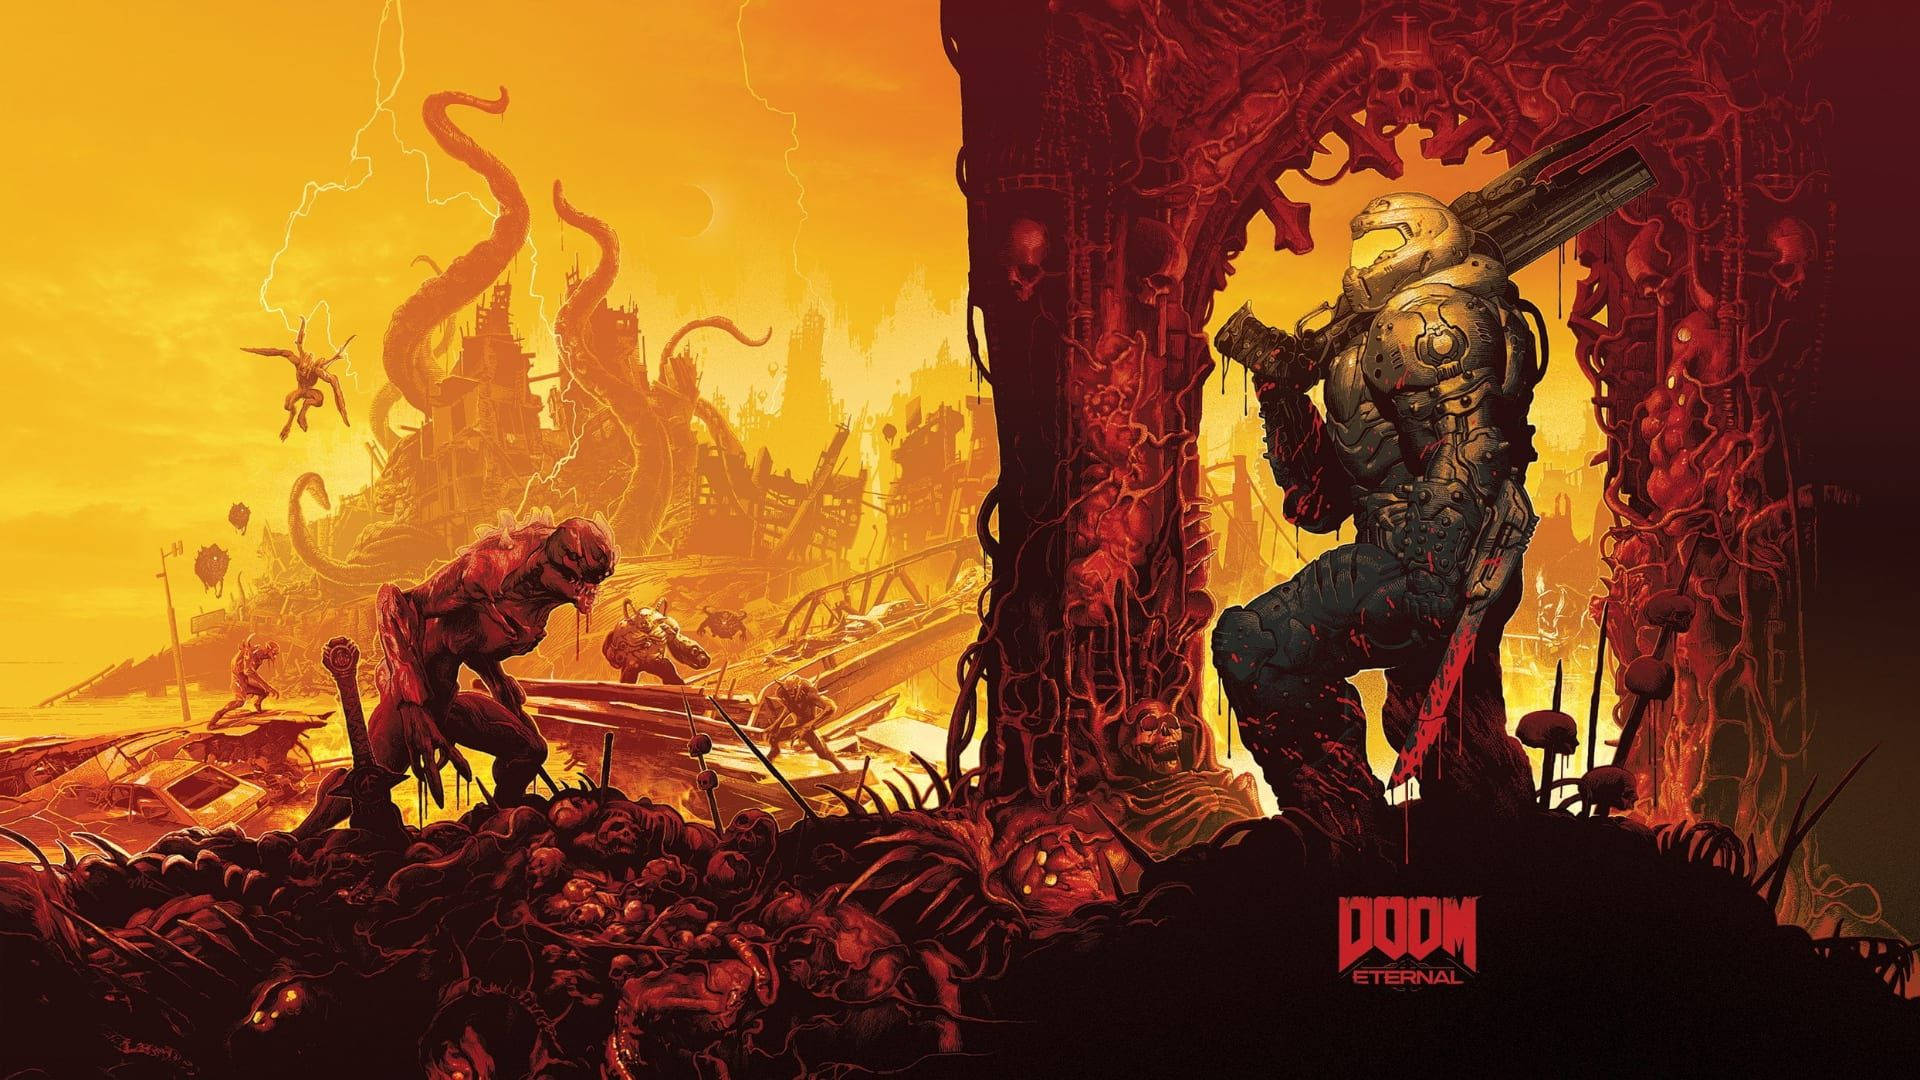 Doom Hd Doomguy With Weapons Wallpaper